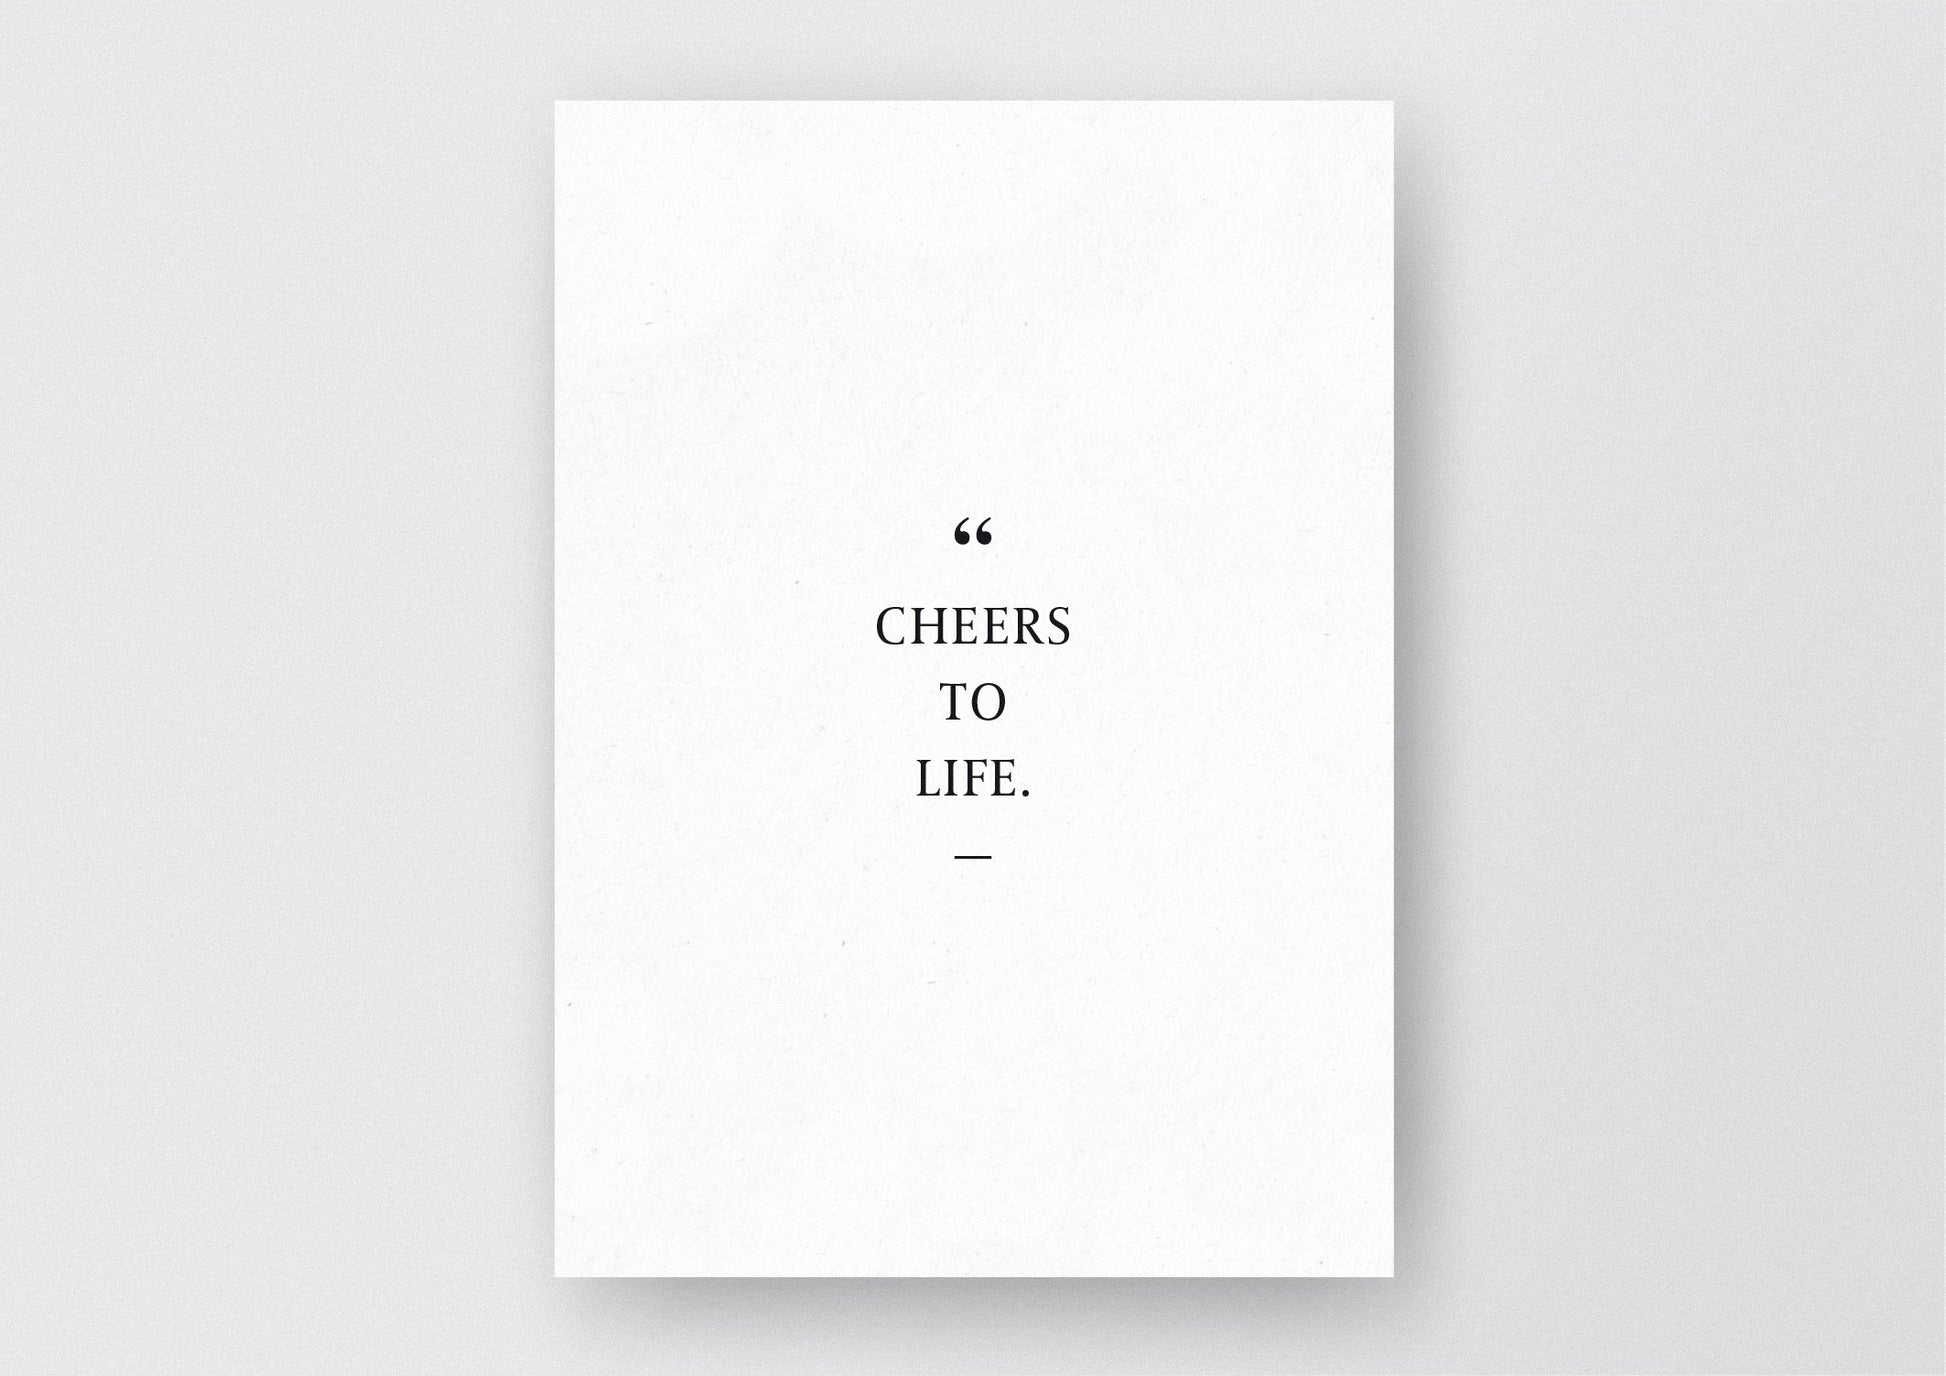 Hochwertiger Kunstdruck von und für Abenteurer mit dem Zitat "Cheers to life".